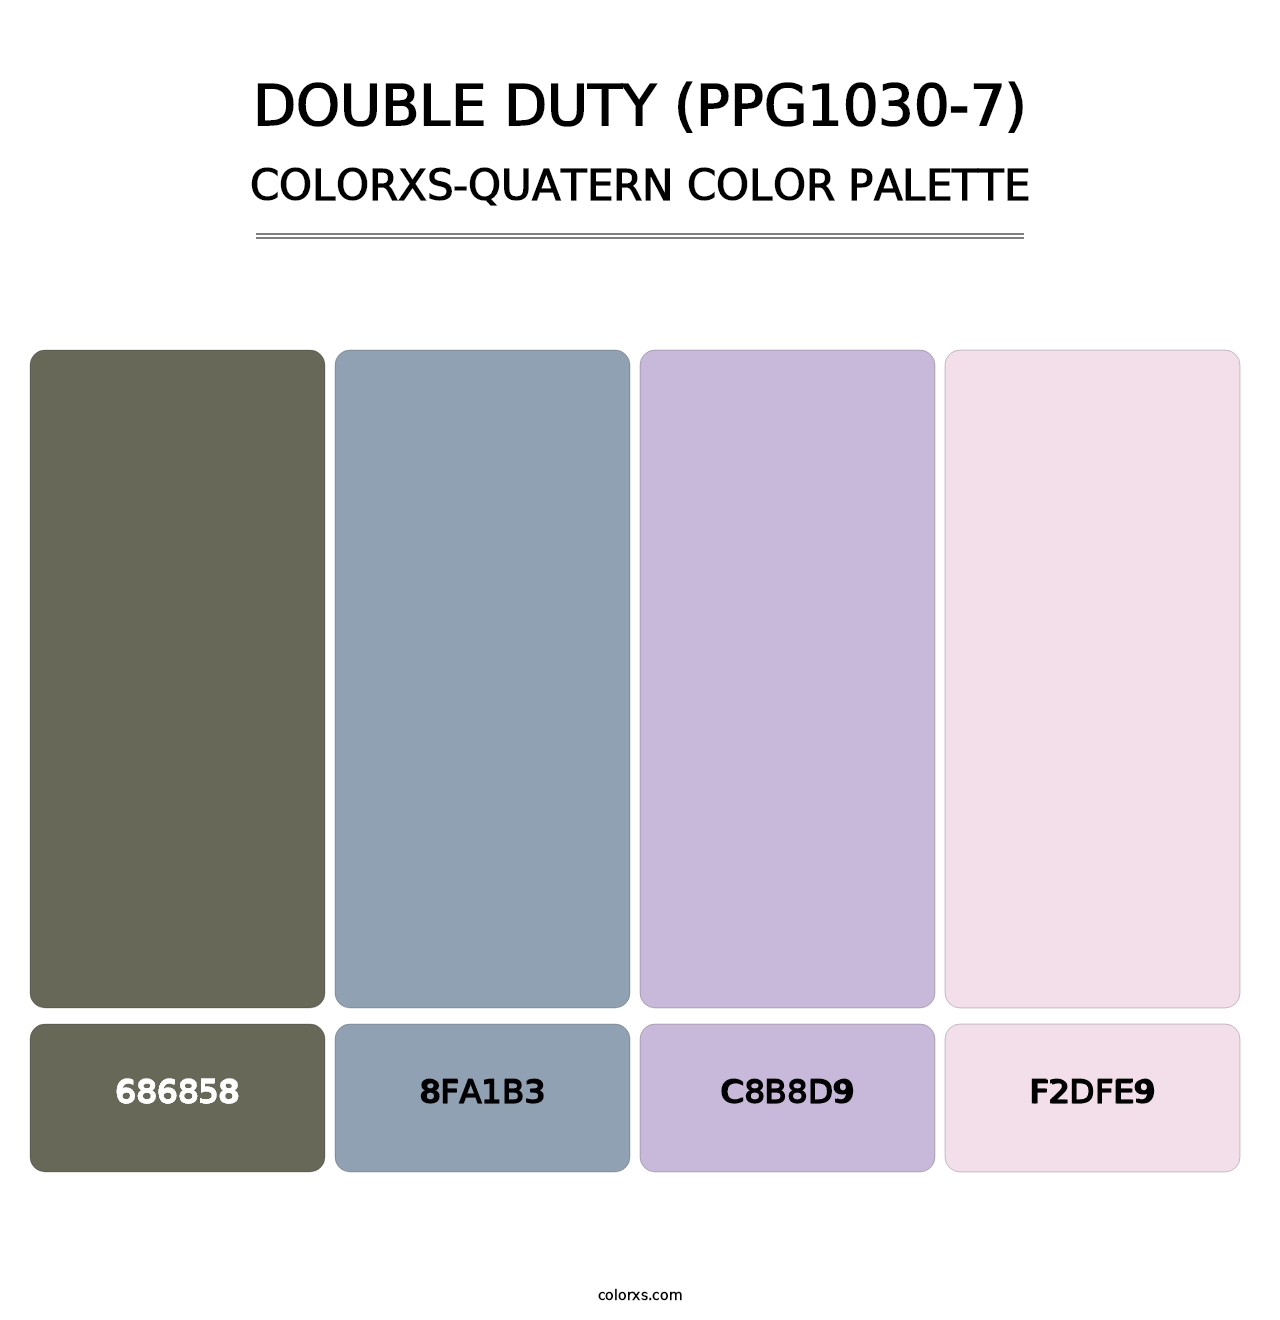 Double Duty (PPG1030-7) - Colorxs Quatern Palette